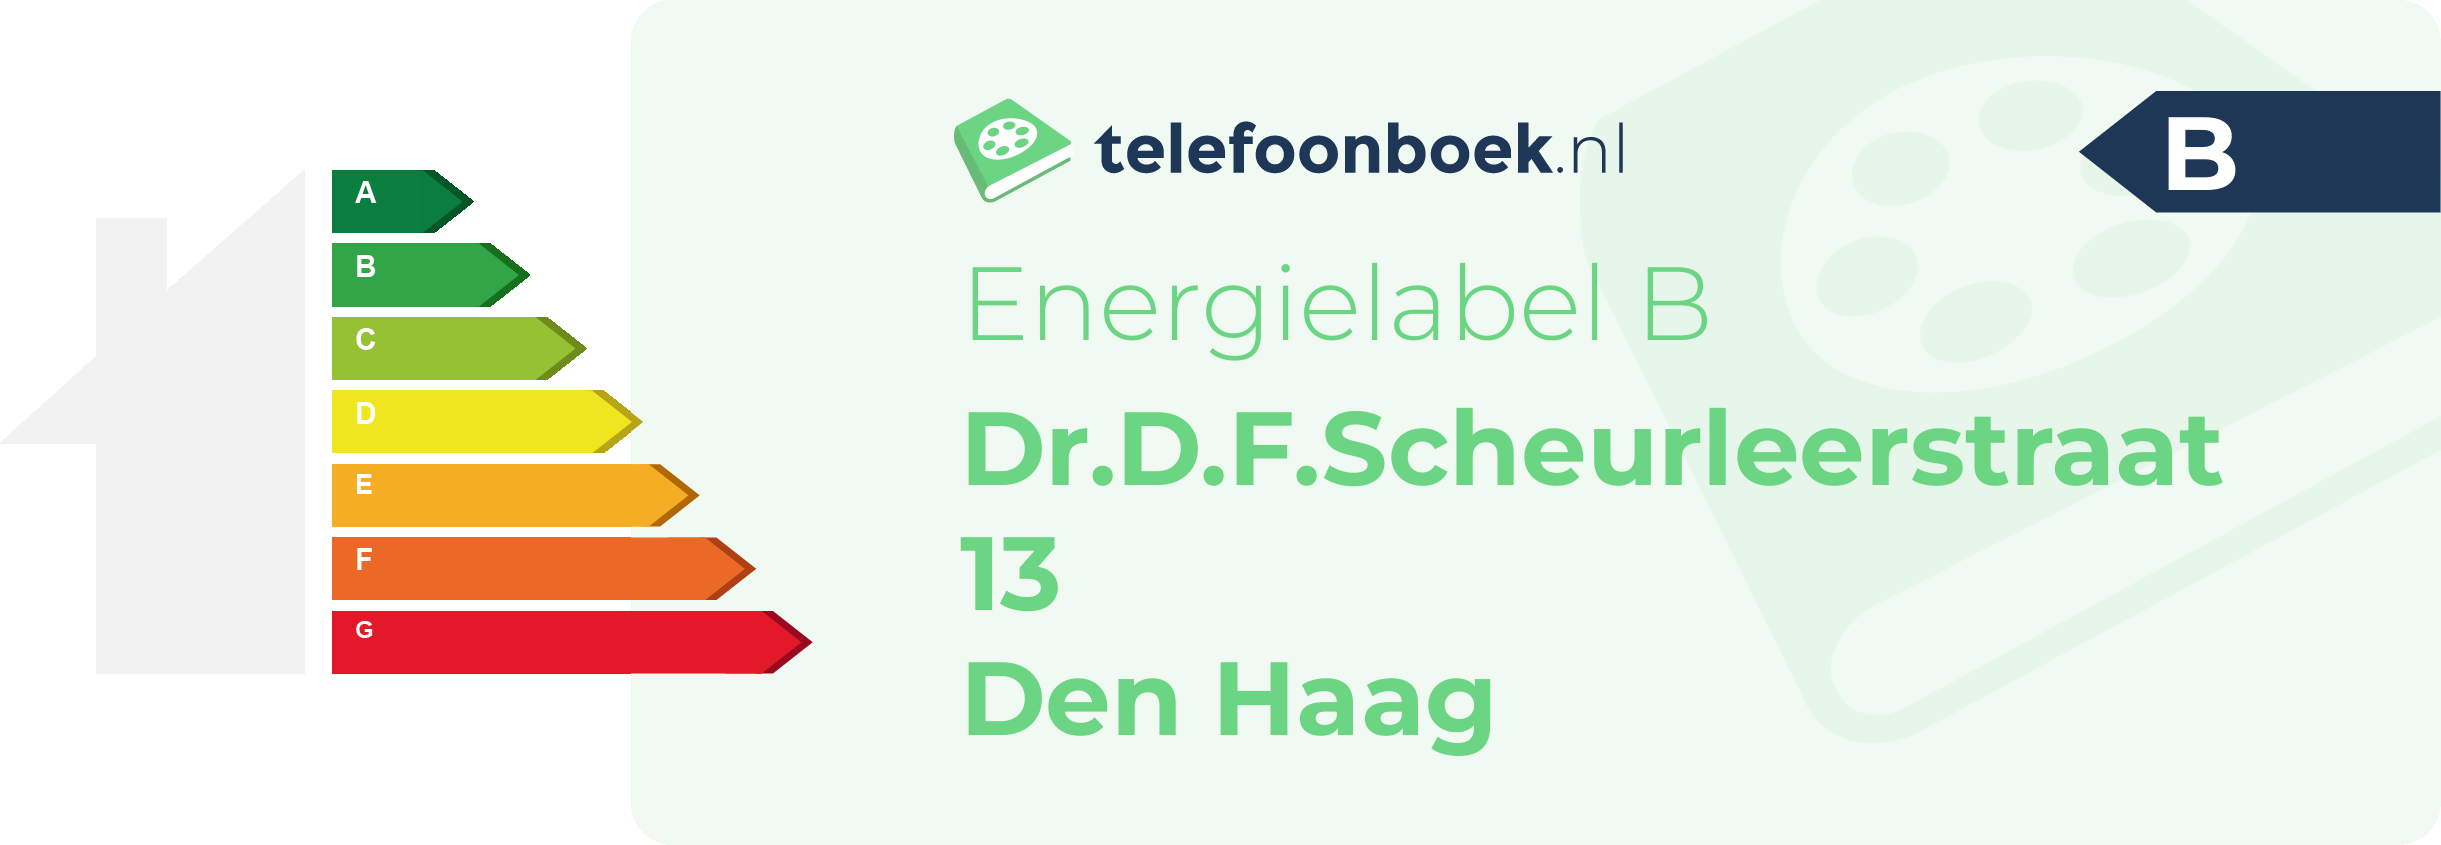 Energielabel Dr.D.F.Scheurleerstraat 13 Den Haag